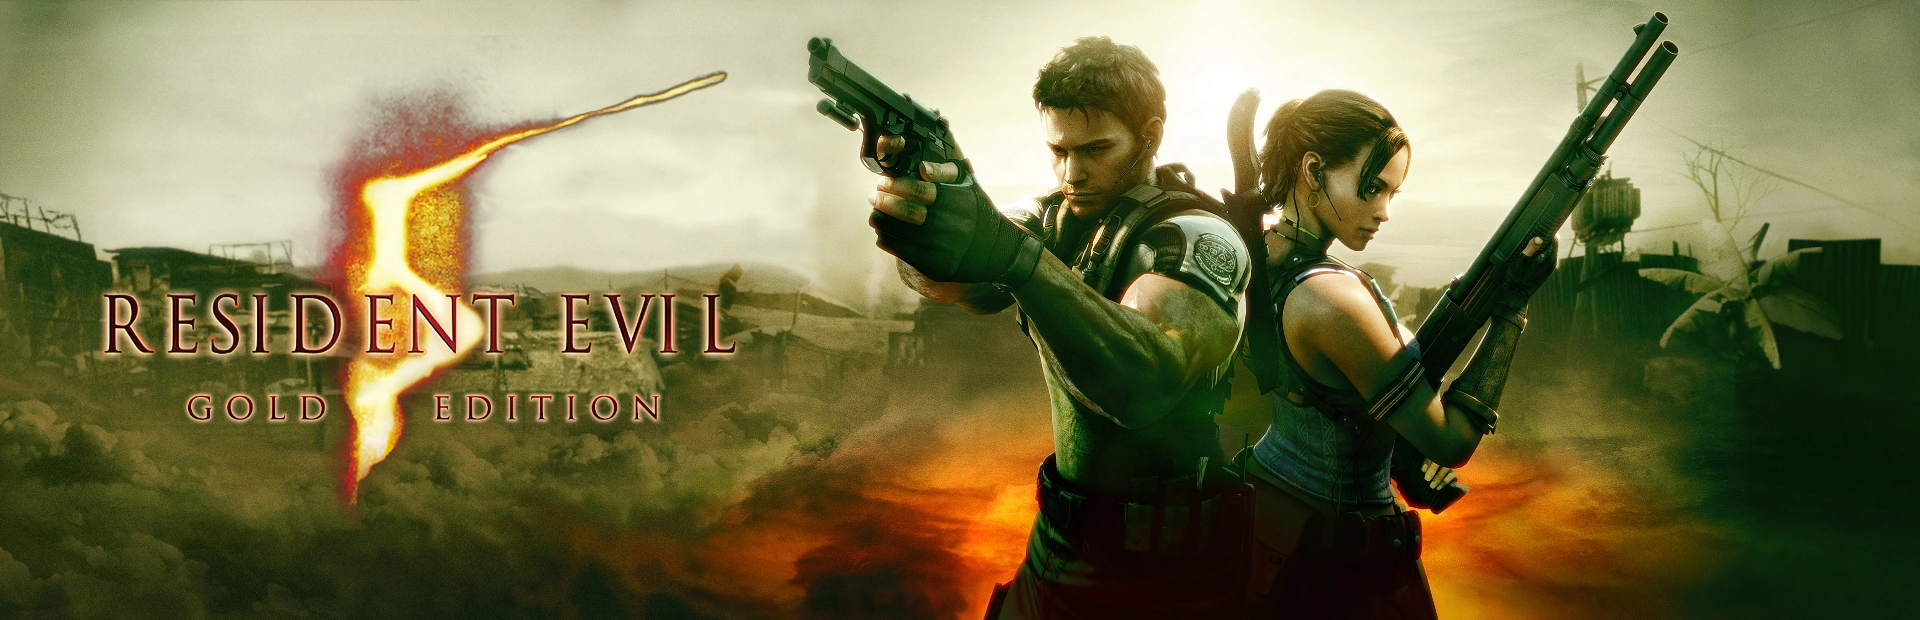  دانلود بازی Resident Evil 5 Gold Edition برای کامپیوتر | گیمباتو